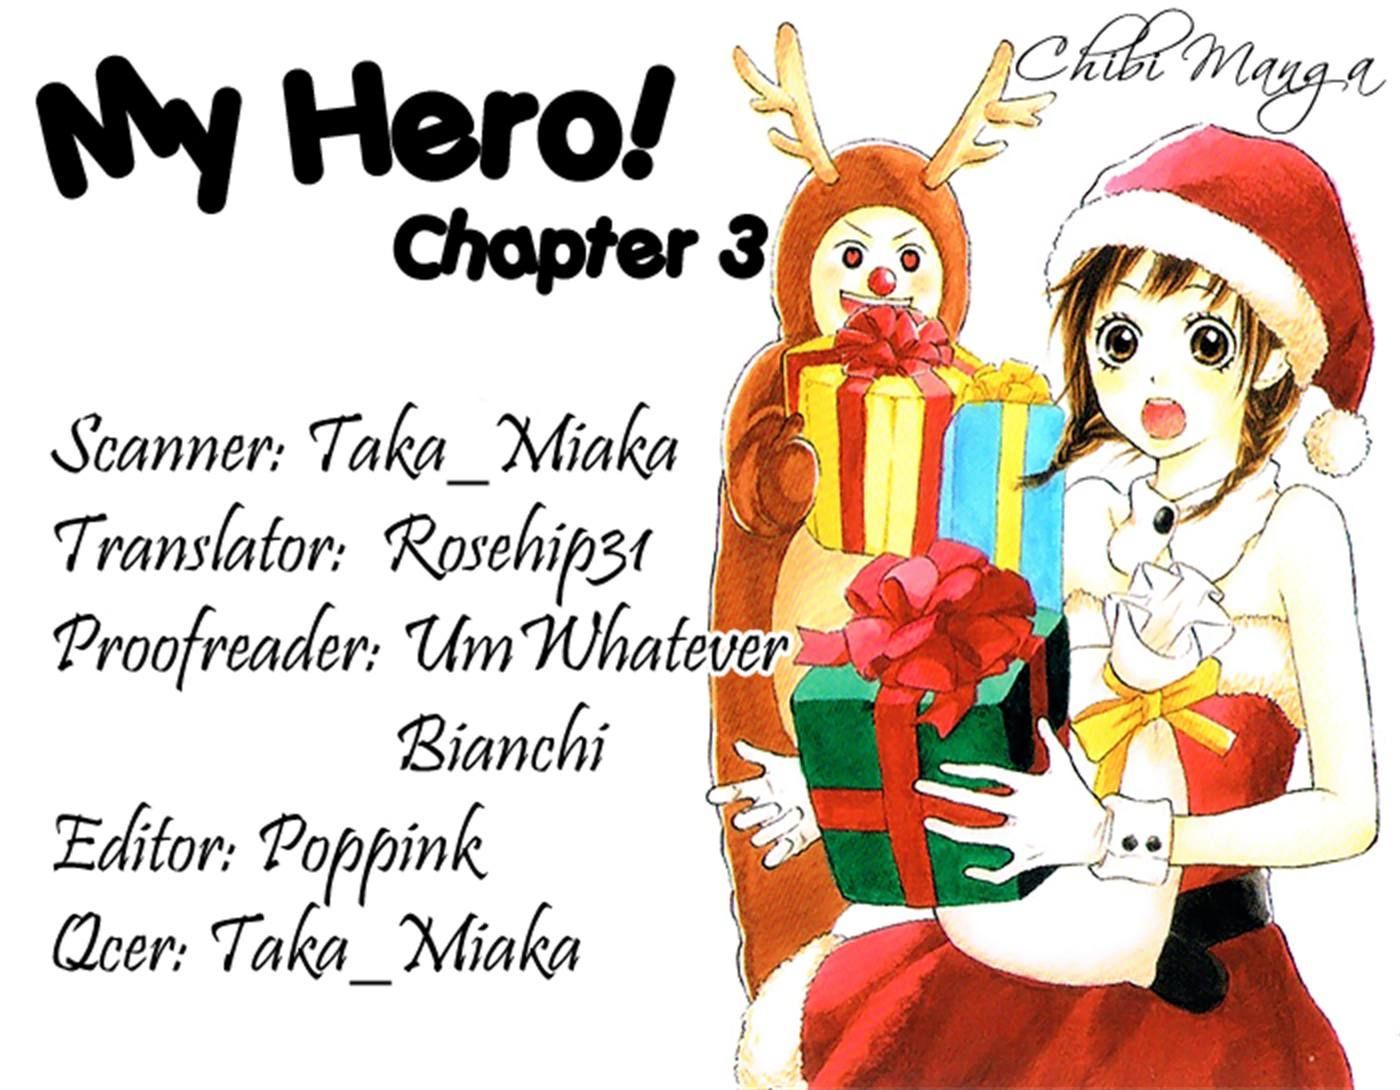 My Hero! Chapter 3 #44